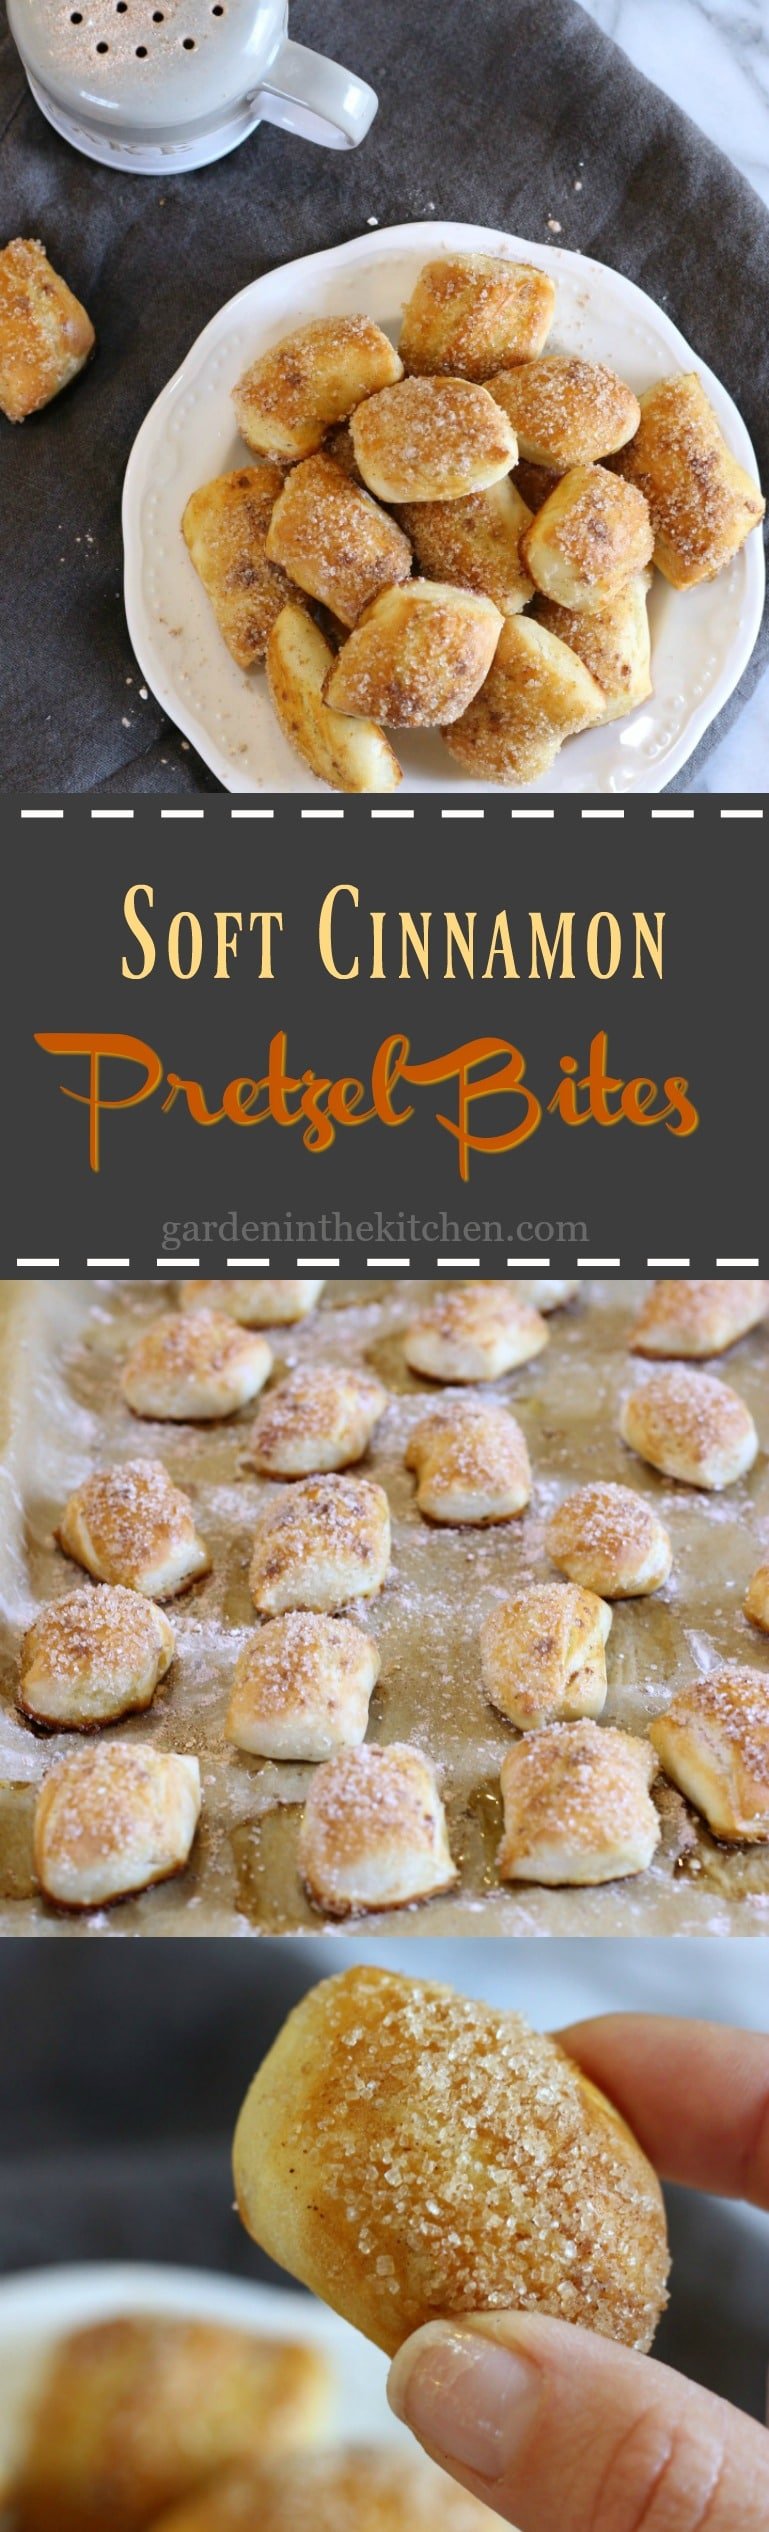 Soft Cinnamon Pretzel Bites | gardeninthekitchen.com